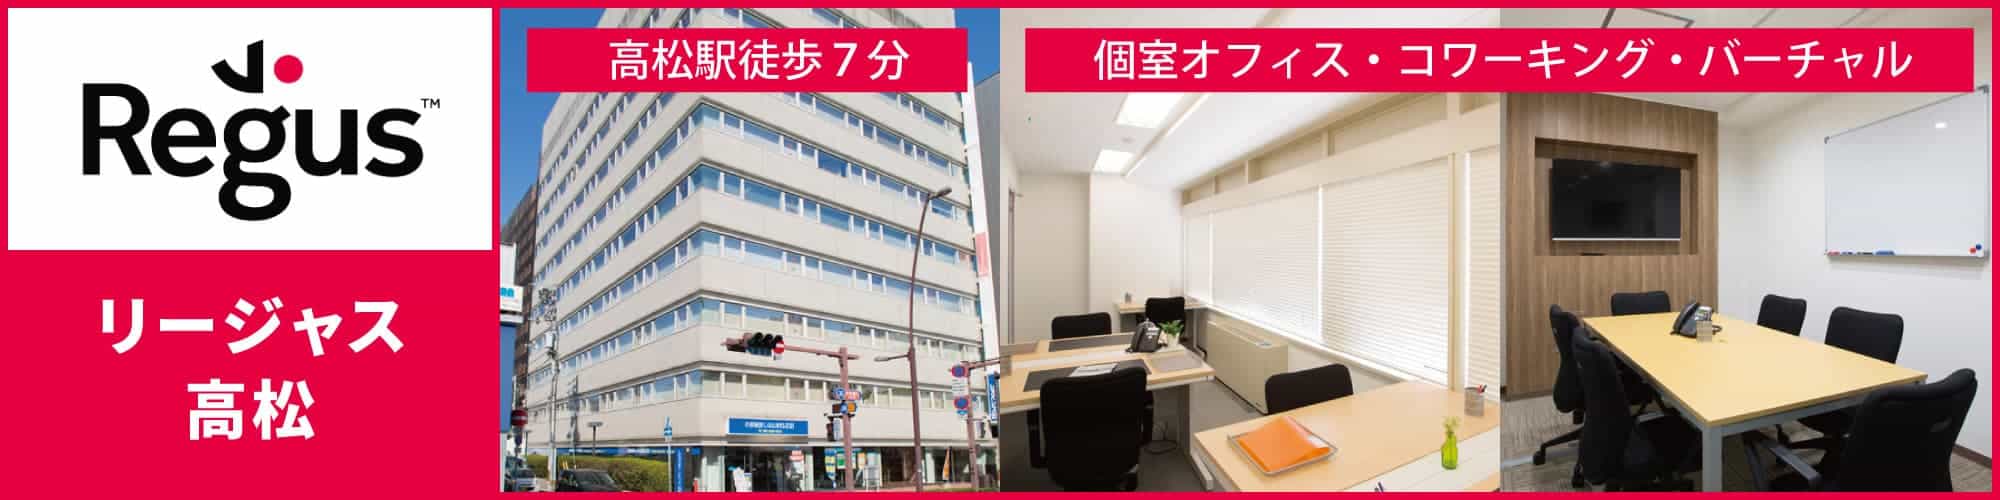 【リージャス高松】四国の玄関口「高松駅」徒歩7分のレンタルオフィス・コワーキングスペース